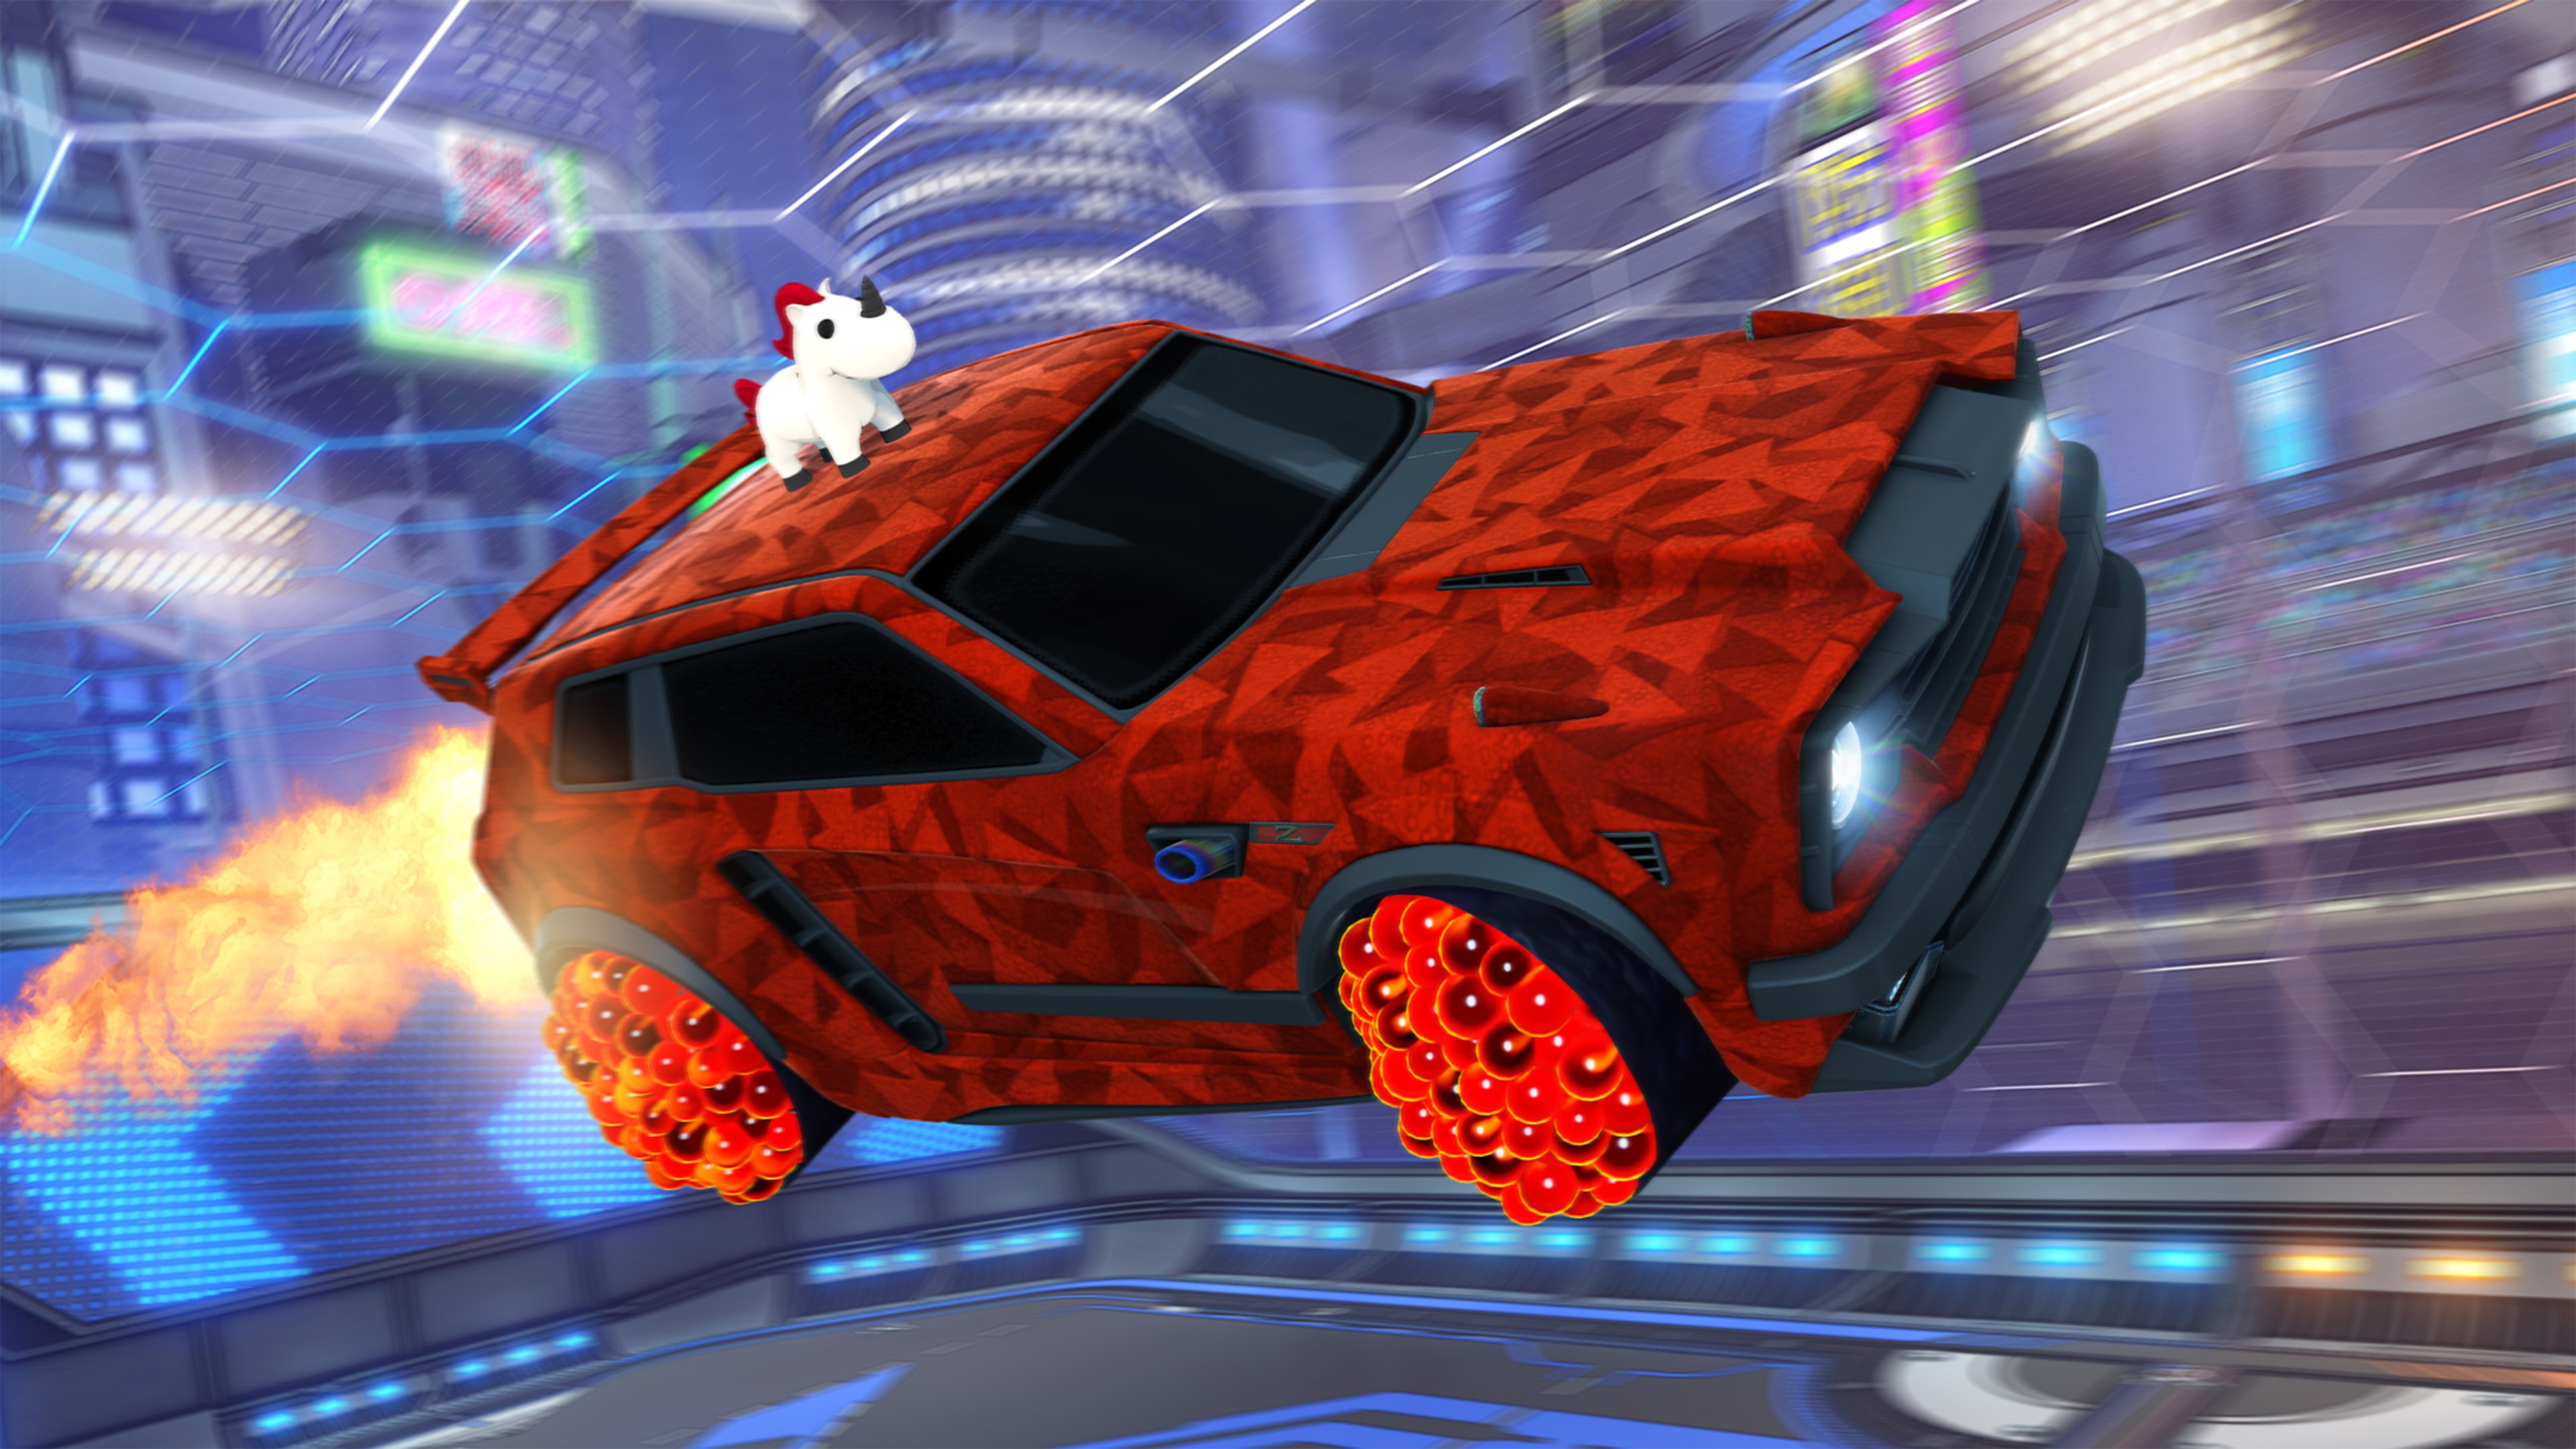 Capture d'écran de Rocket League montrant une voiture rouge aux motifs géométriques, dont le toit est orné d'une licorne